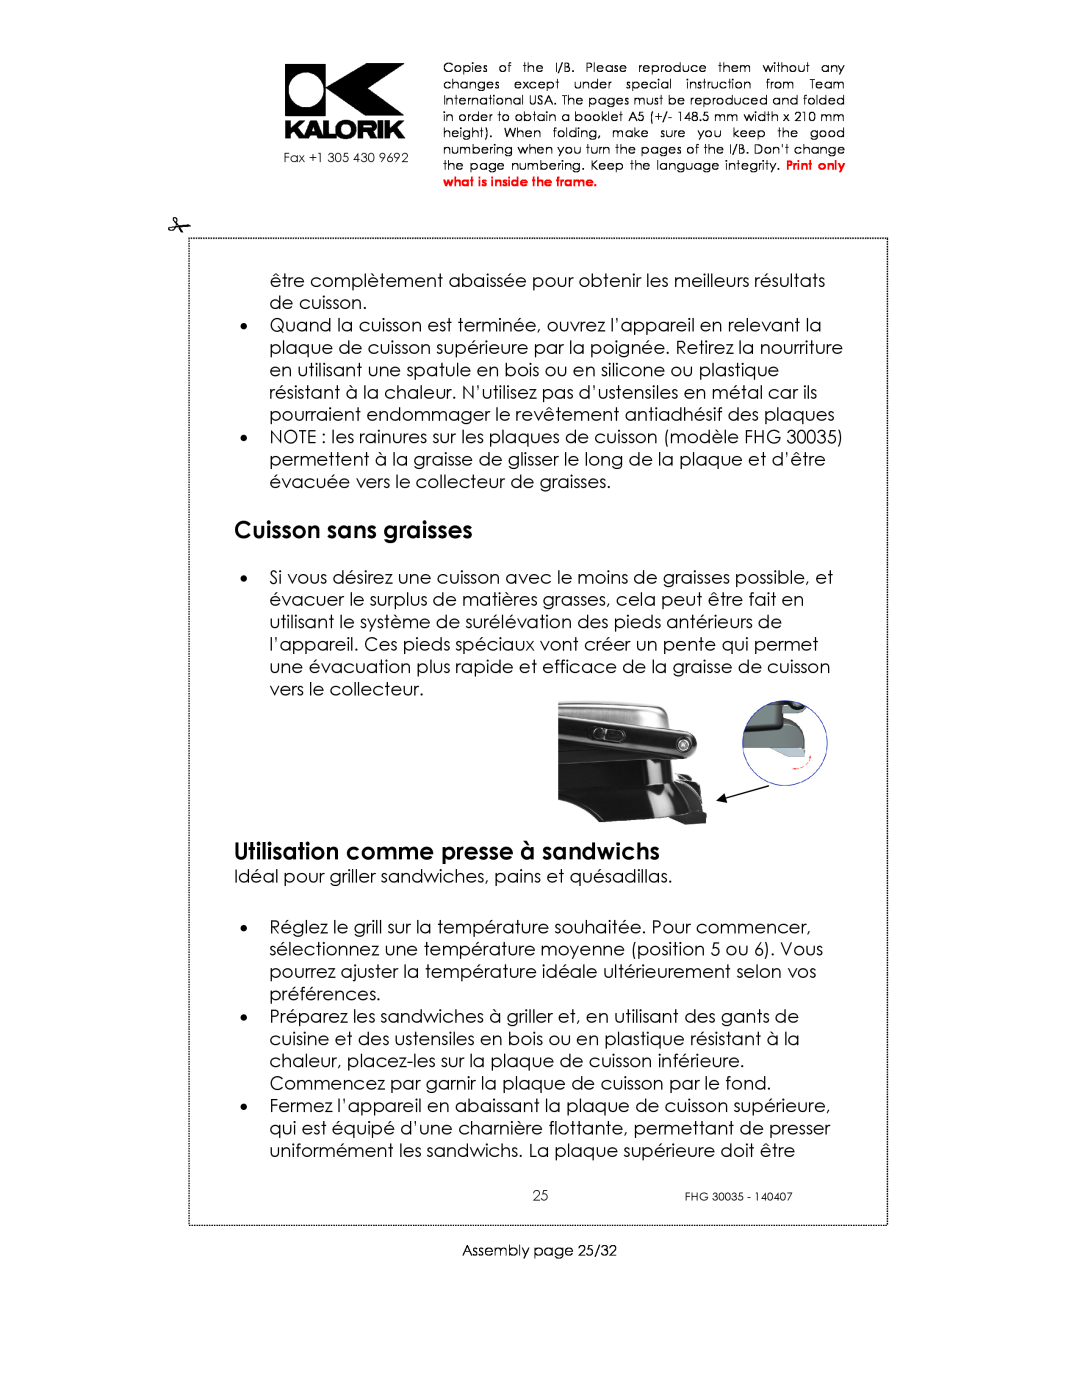 Kalorik FHG 30035 manual Cuisson sans graisses, Utilisation comme presse à sandwichs, Assembly page 25/32 